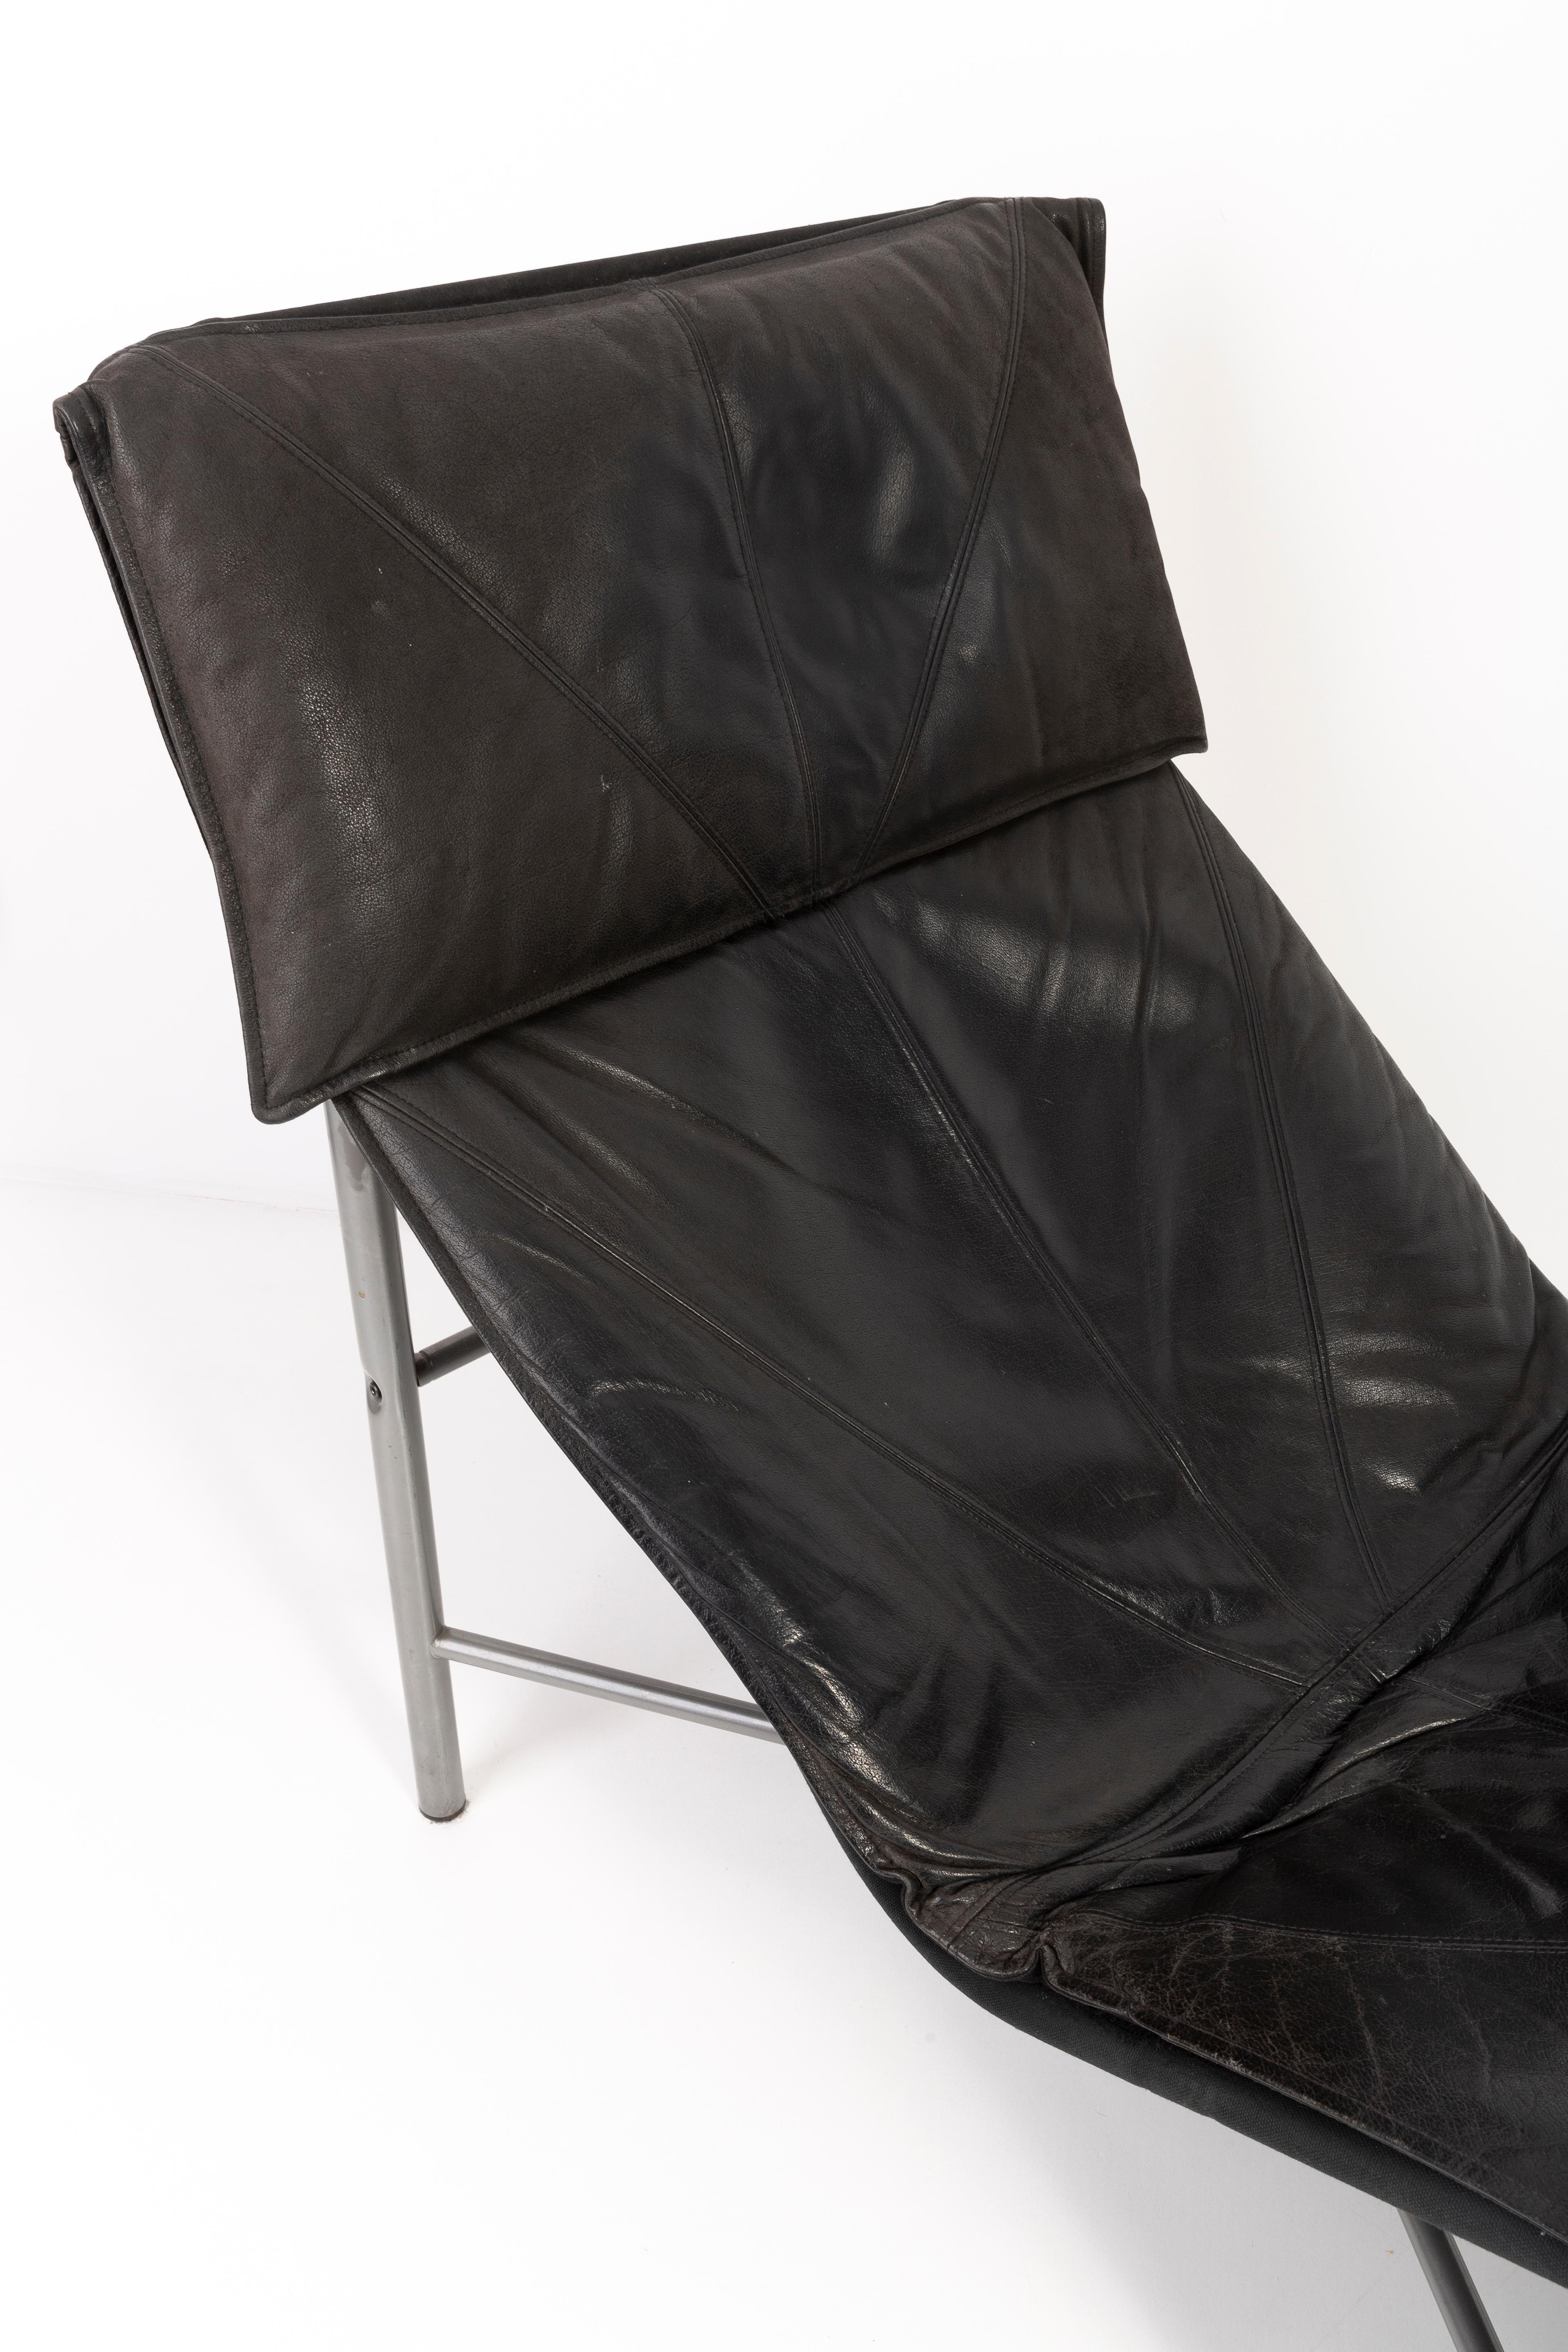 Chaise Longue en Cuir Noir de Style Danois Moderne du Milieu du Siècle par Tord Bjrklund 1